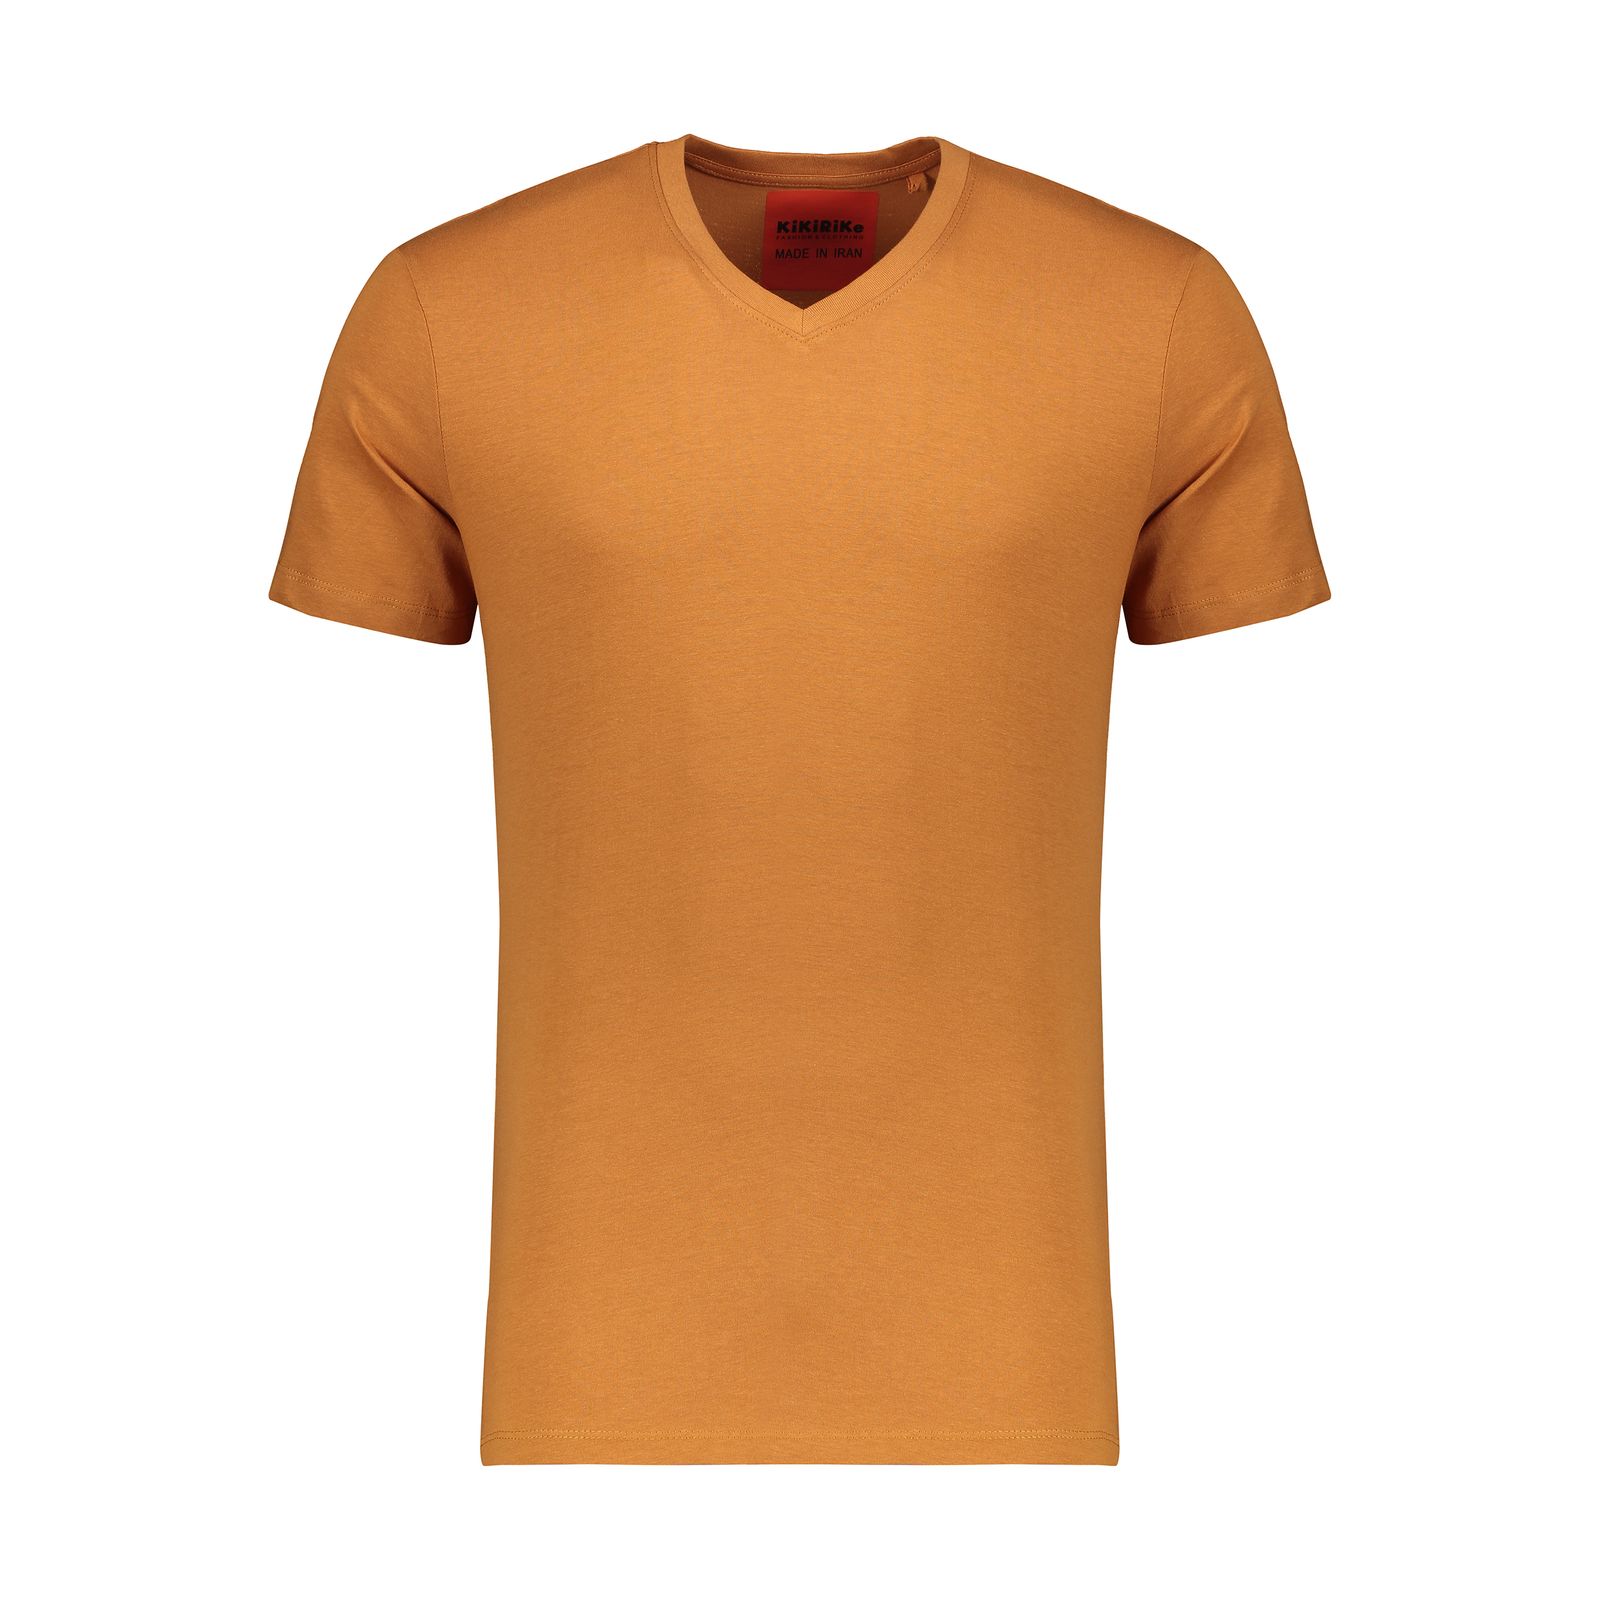 تی شرت مردانه کیکی رایکی مدل MBB02989-026 -  - 1